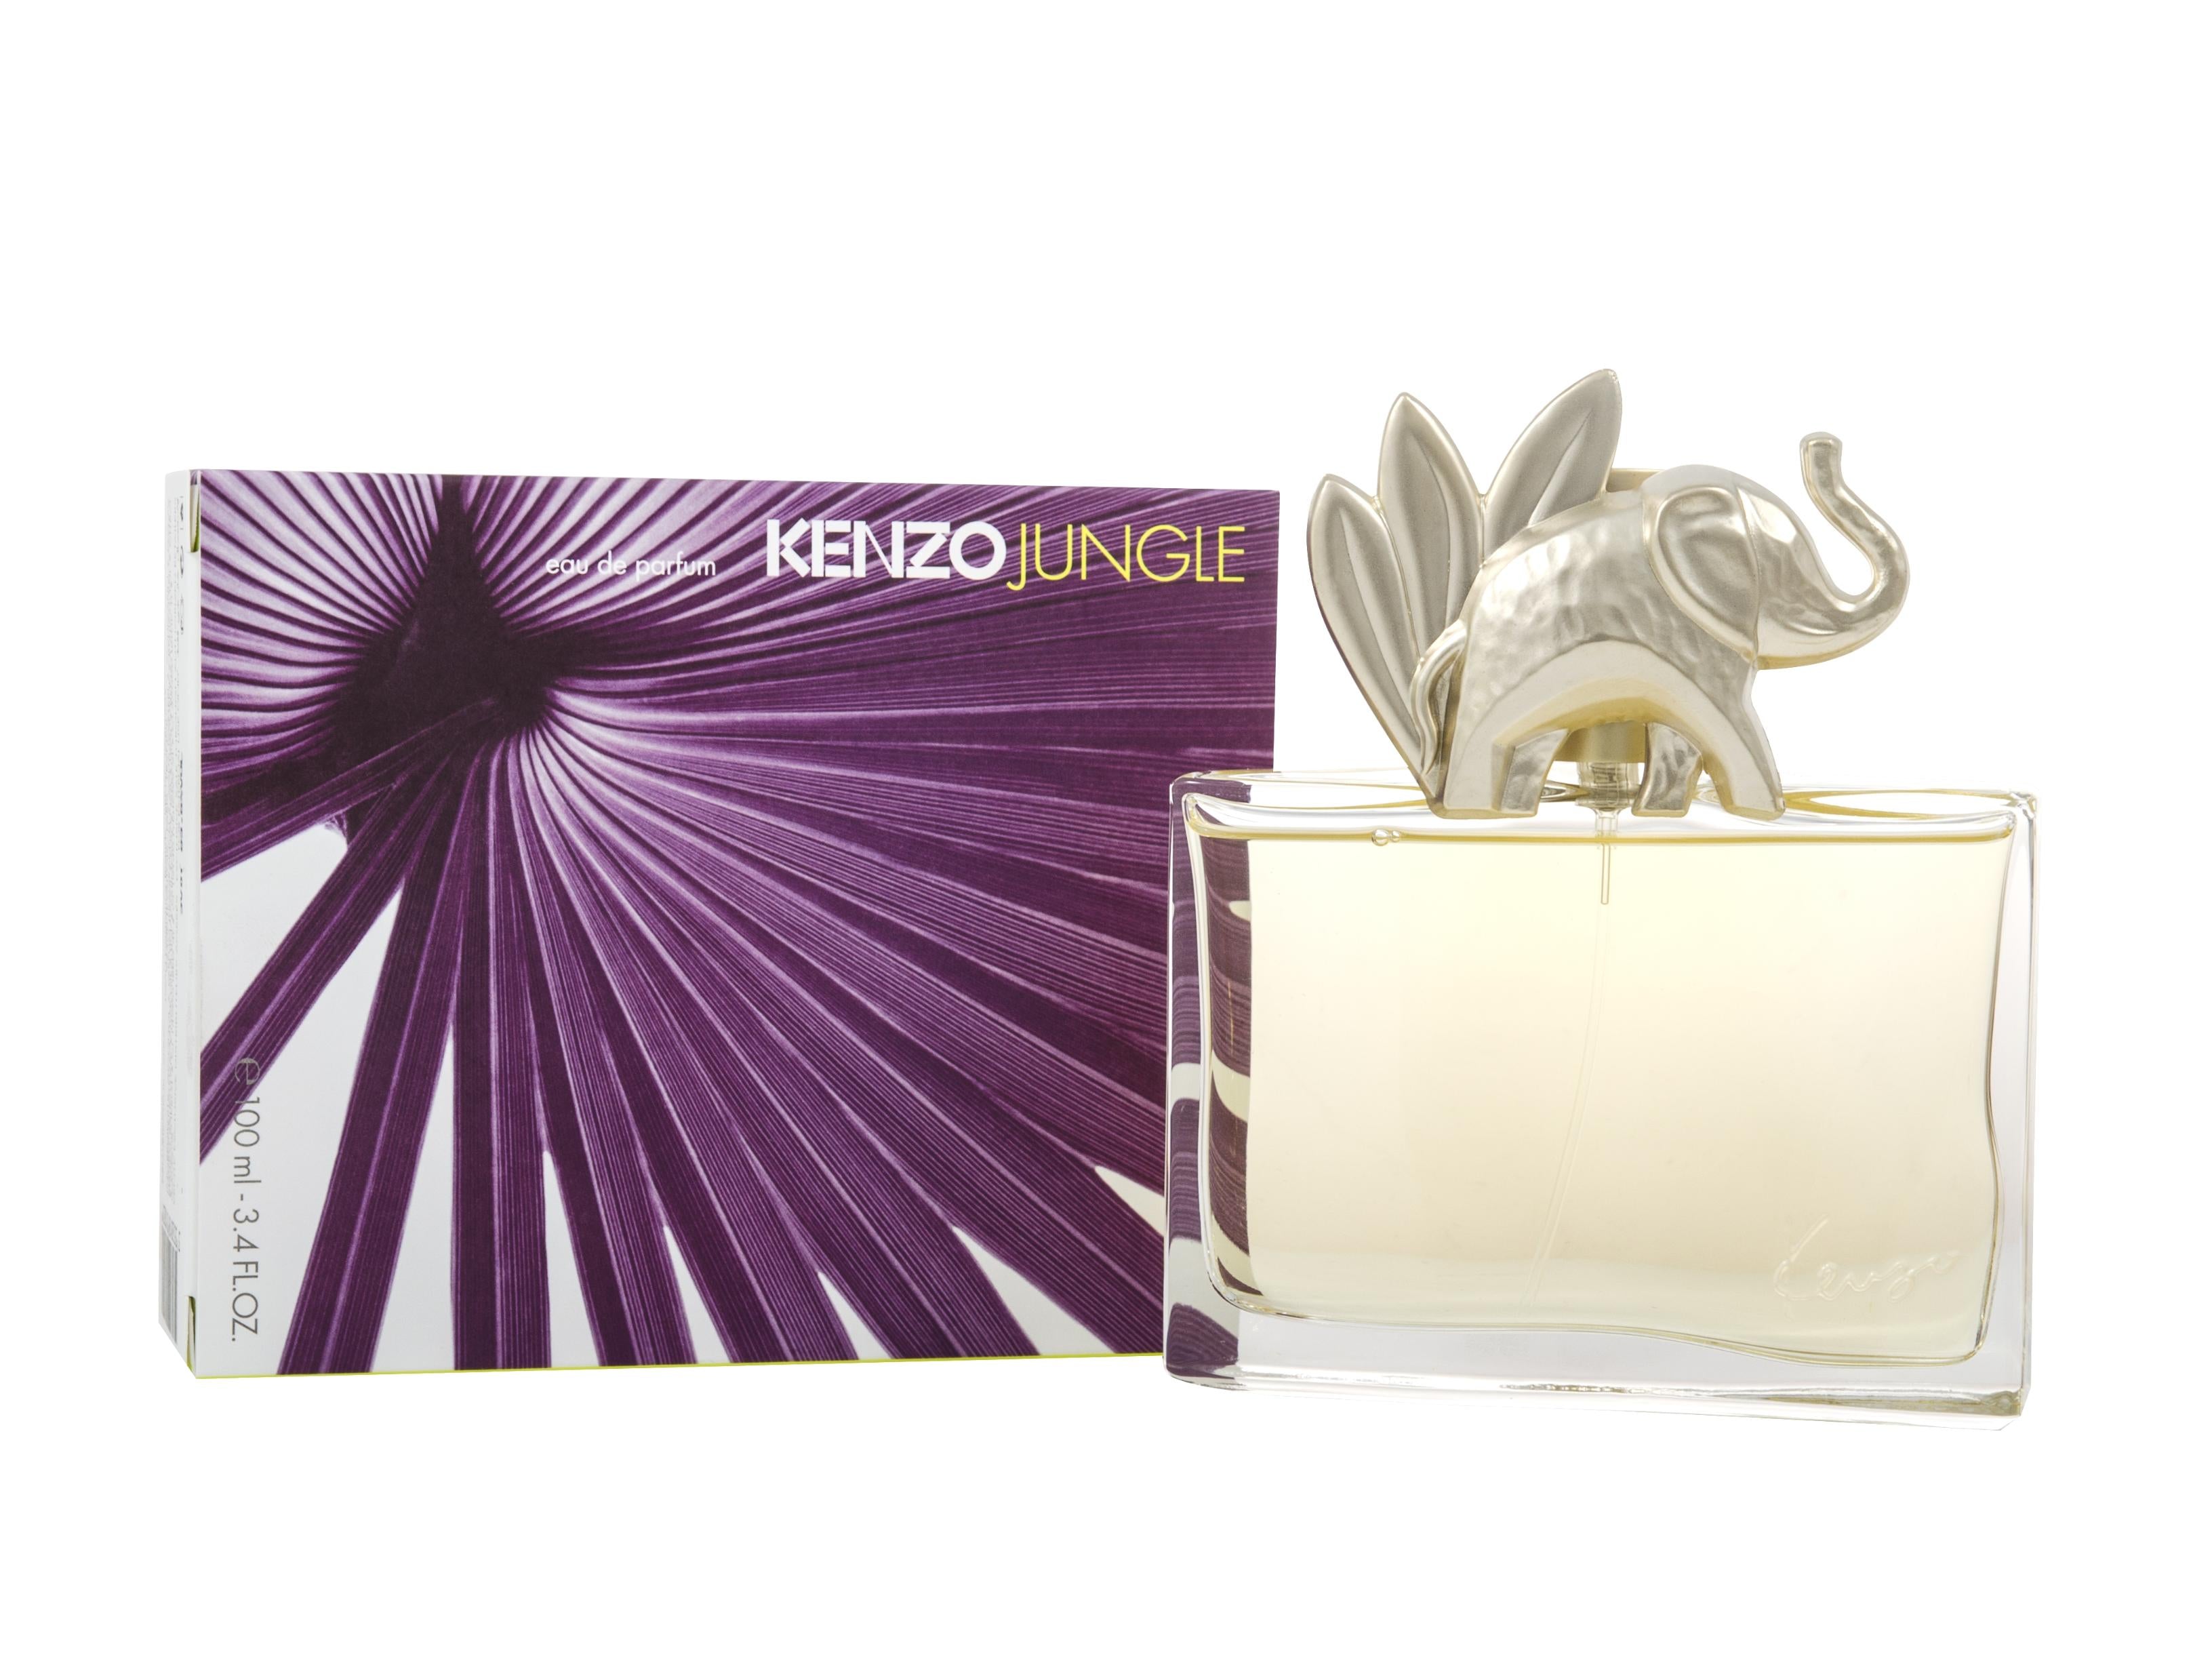 View Kenzo Jungle Elephant Eau de Parfum 100ml Spray information